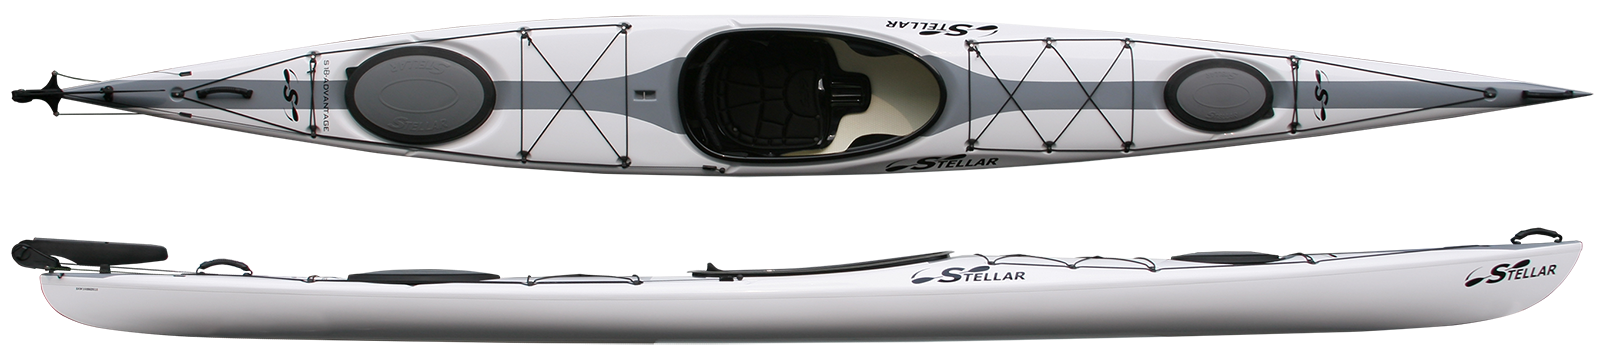 Kayaks: S18 by Stellar Kayaks - Image 4703